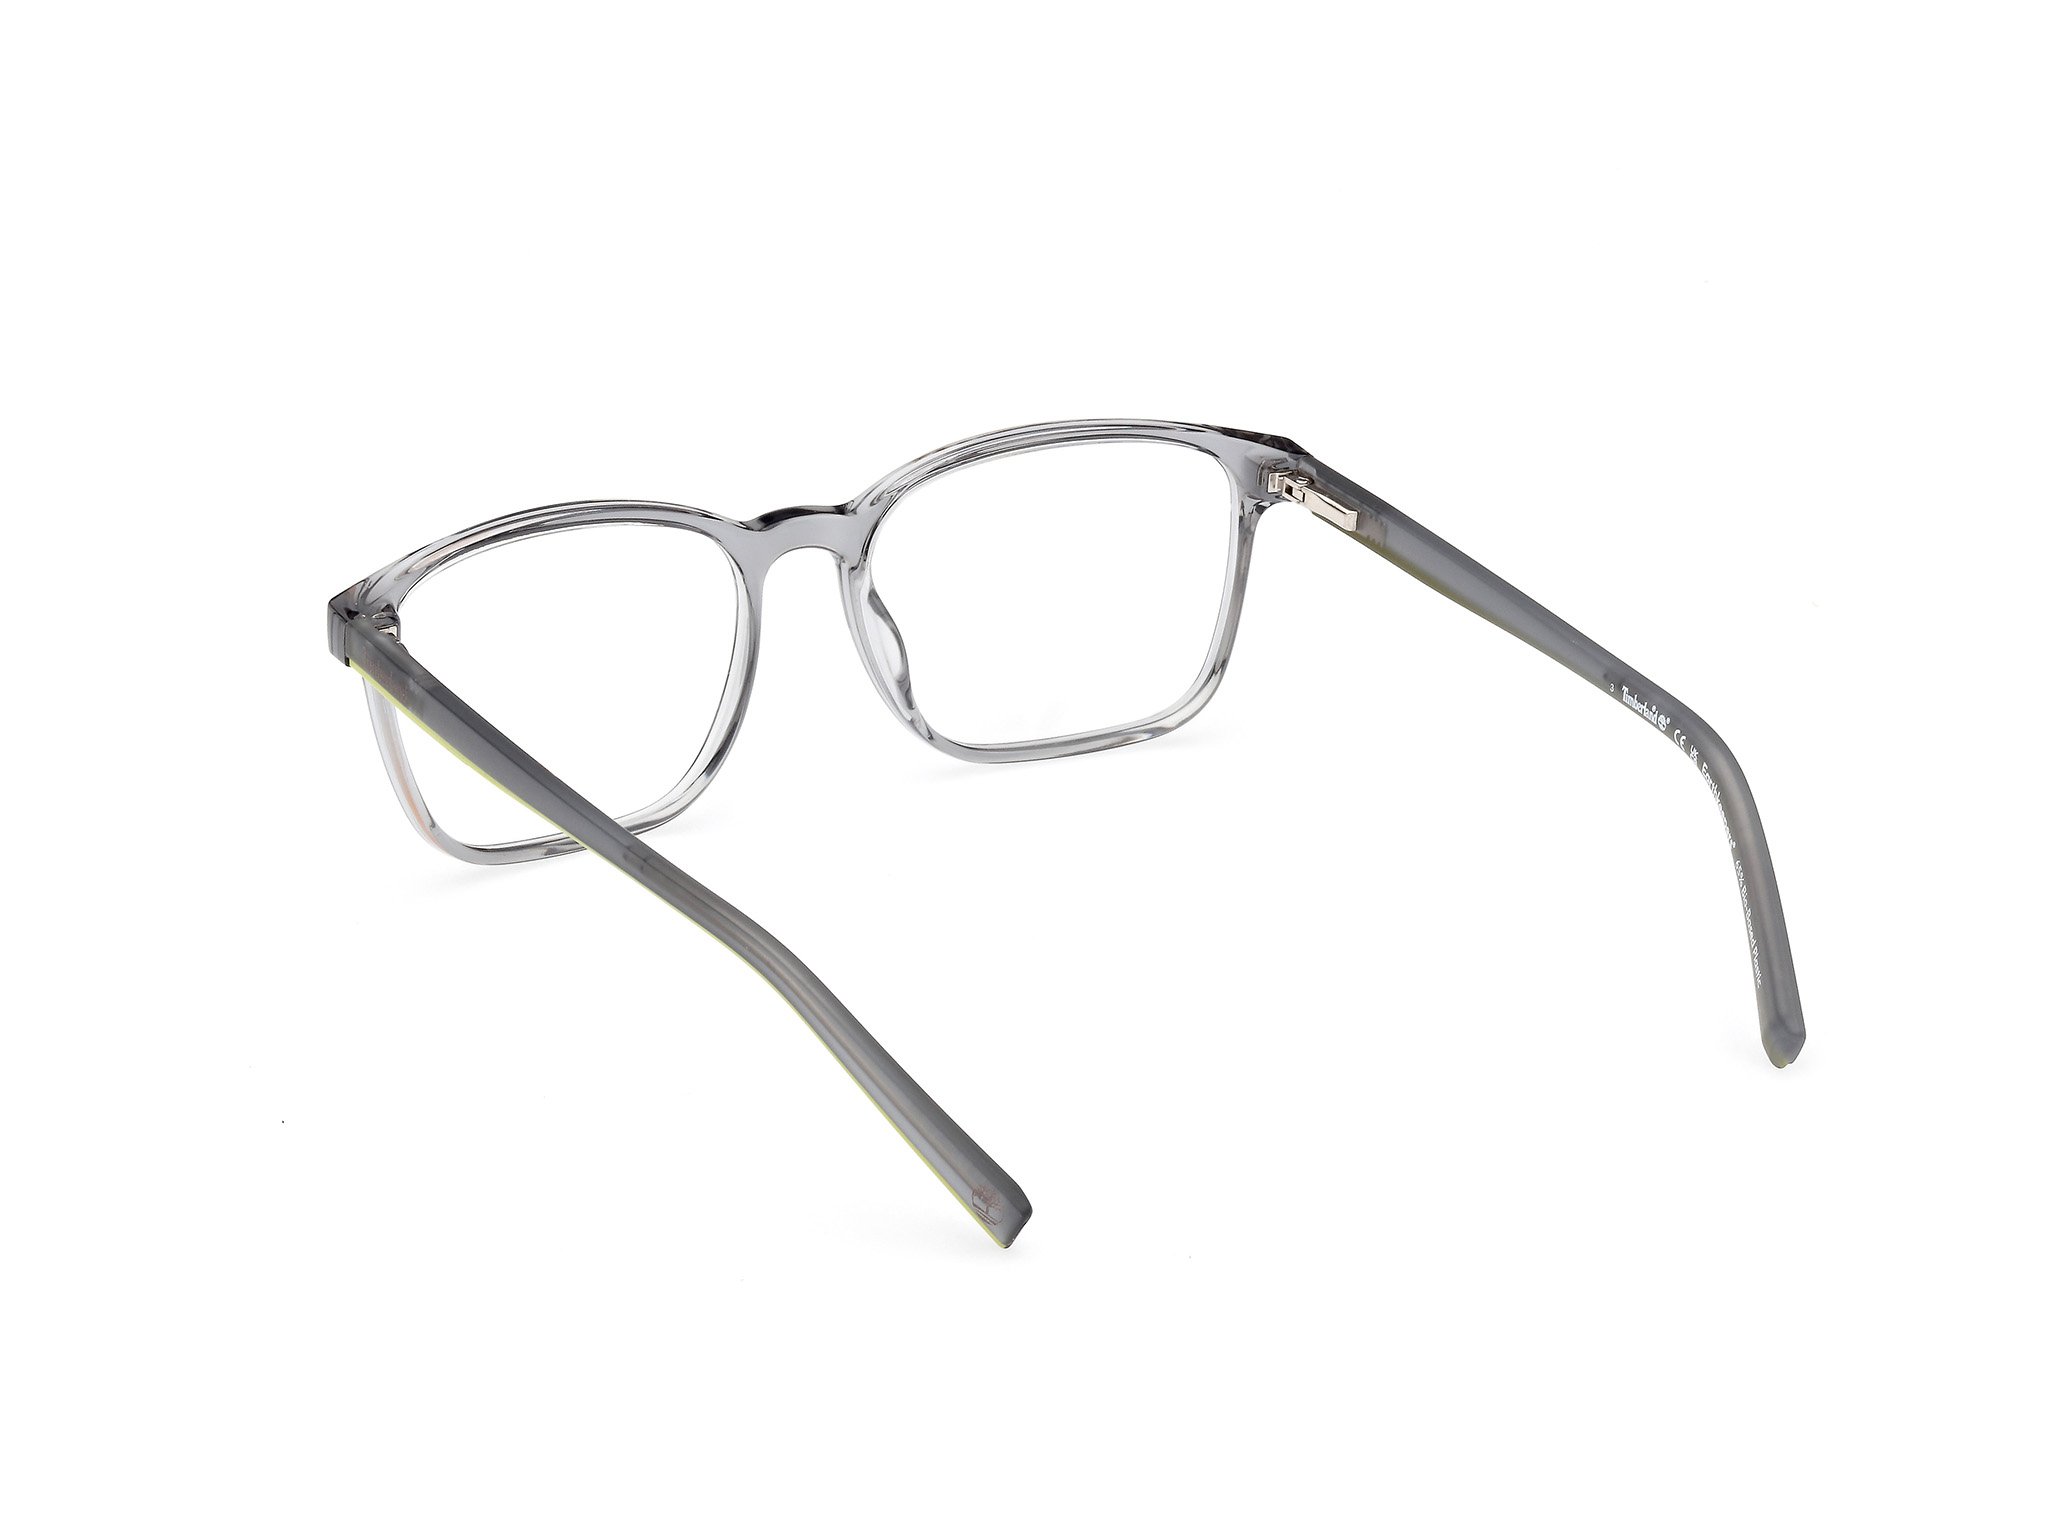 Das Bild zeigt die Korrektionsbrille TB1817 020 von der Marke Timberland in grau.